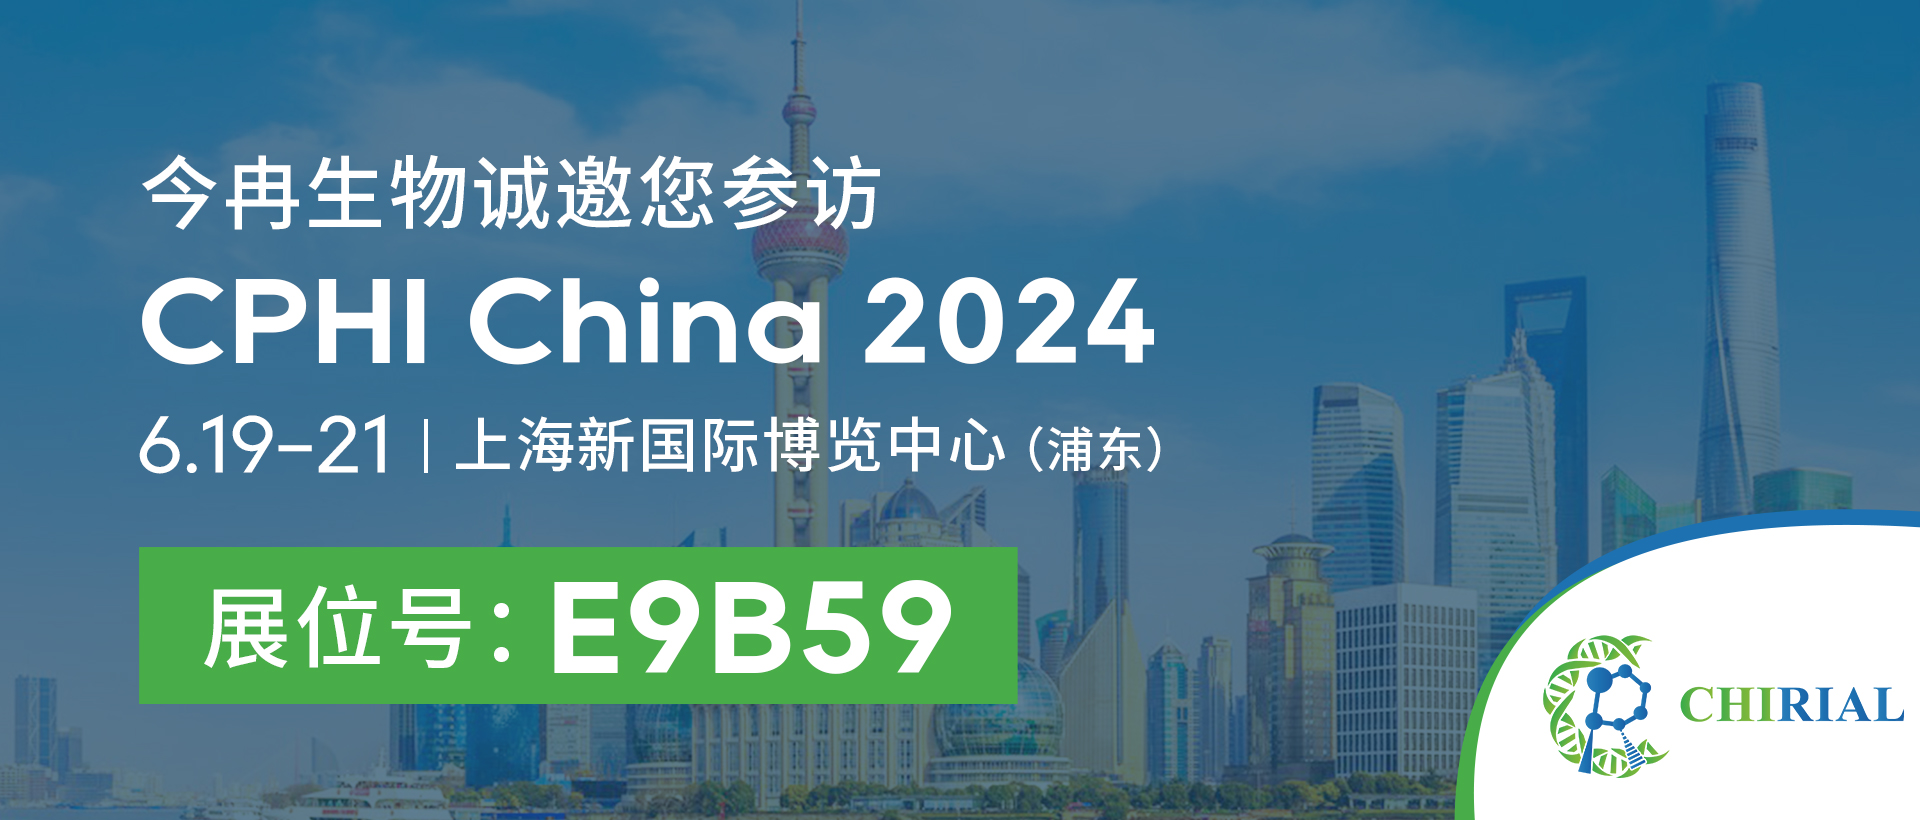 Cartaz de convite do site oficial chinês da exposição 2024 CPHI